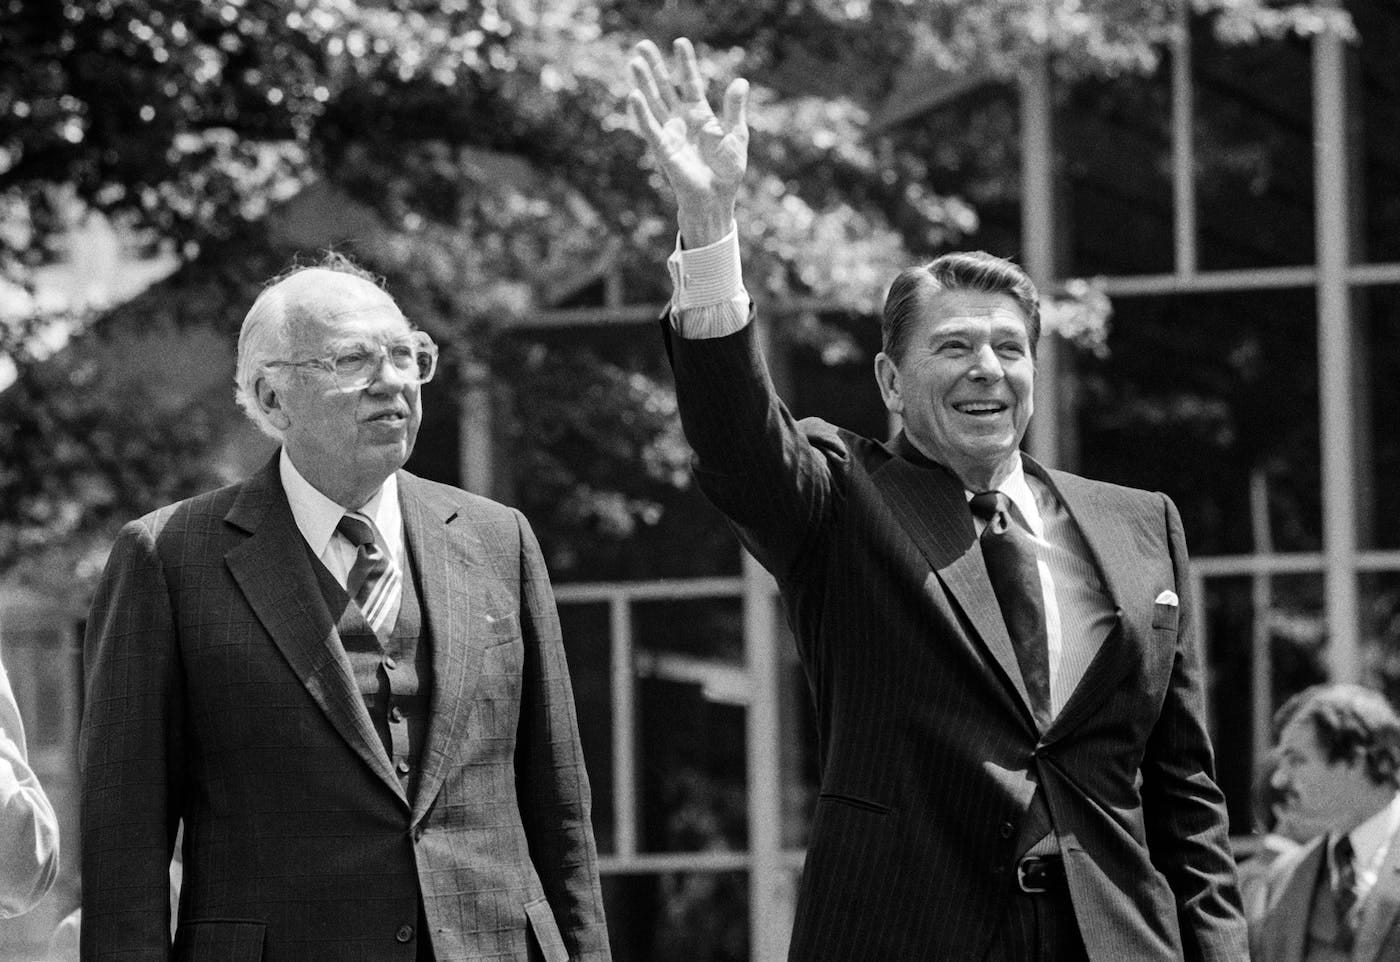 Empire Politician - 1981: Biden and Reagan's CIA Director, William Casey